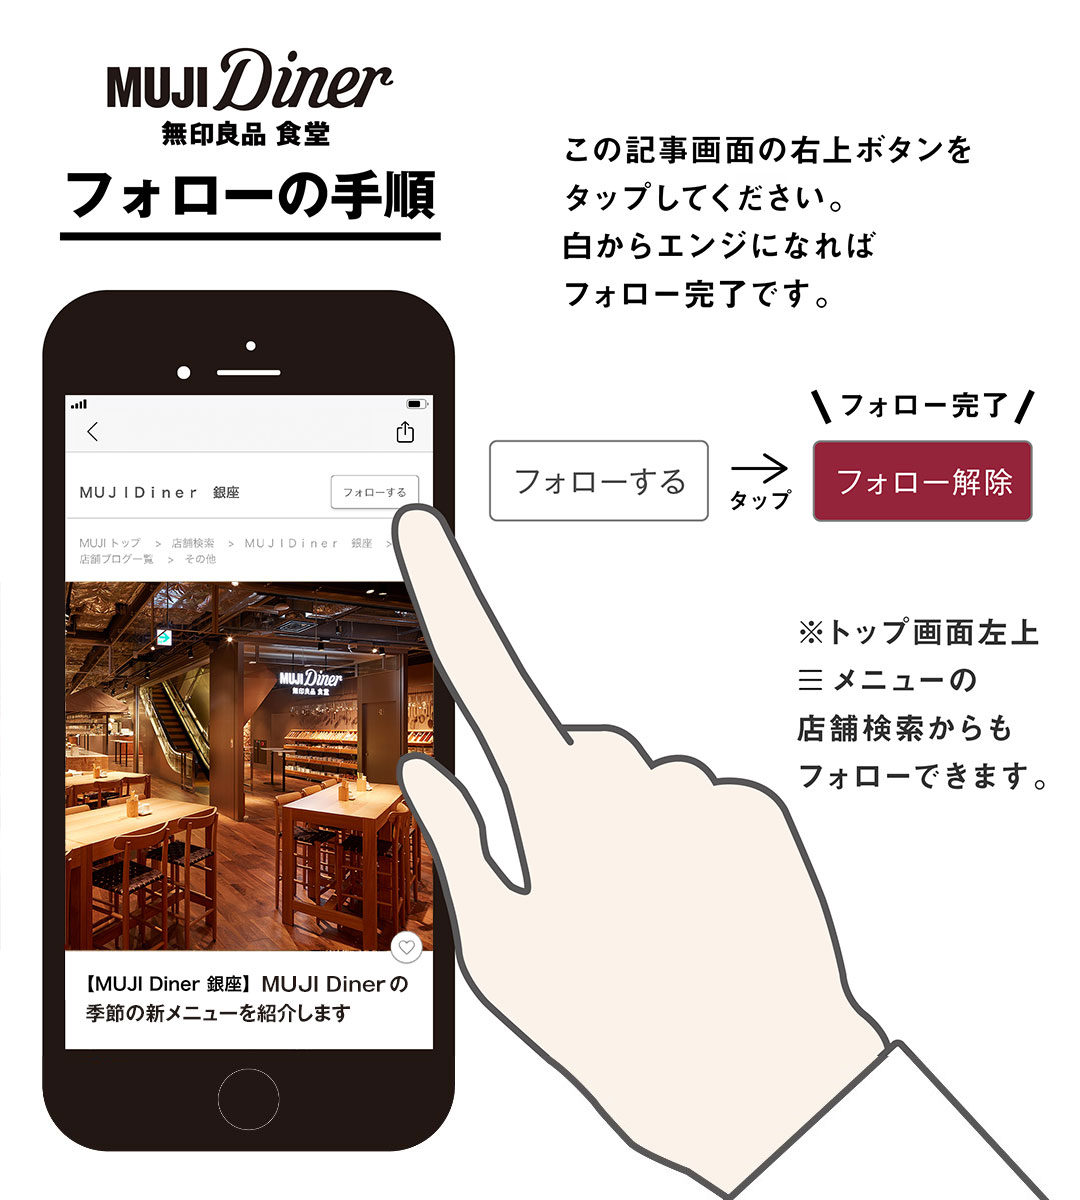 【MUJI Diner銀座】